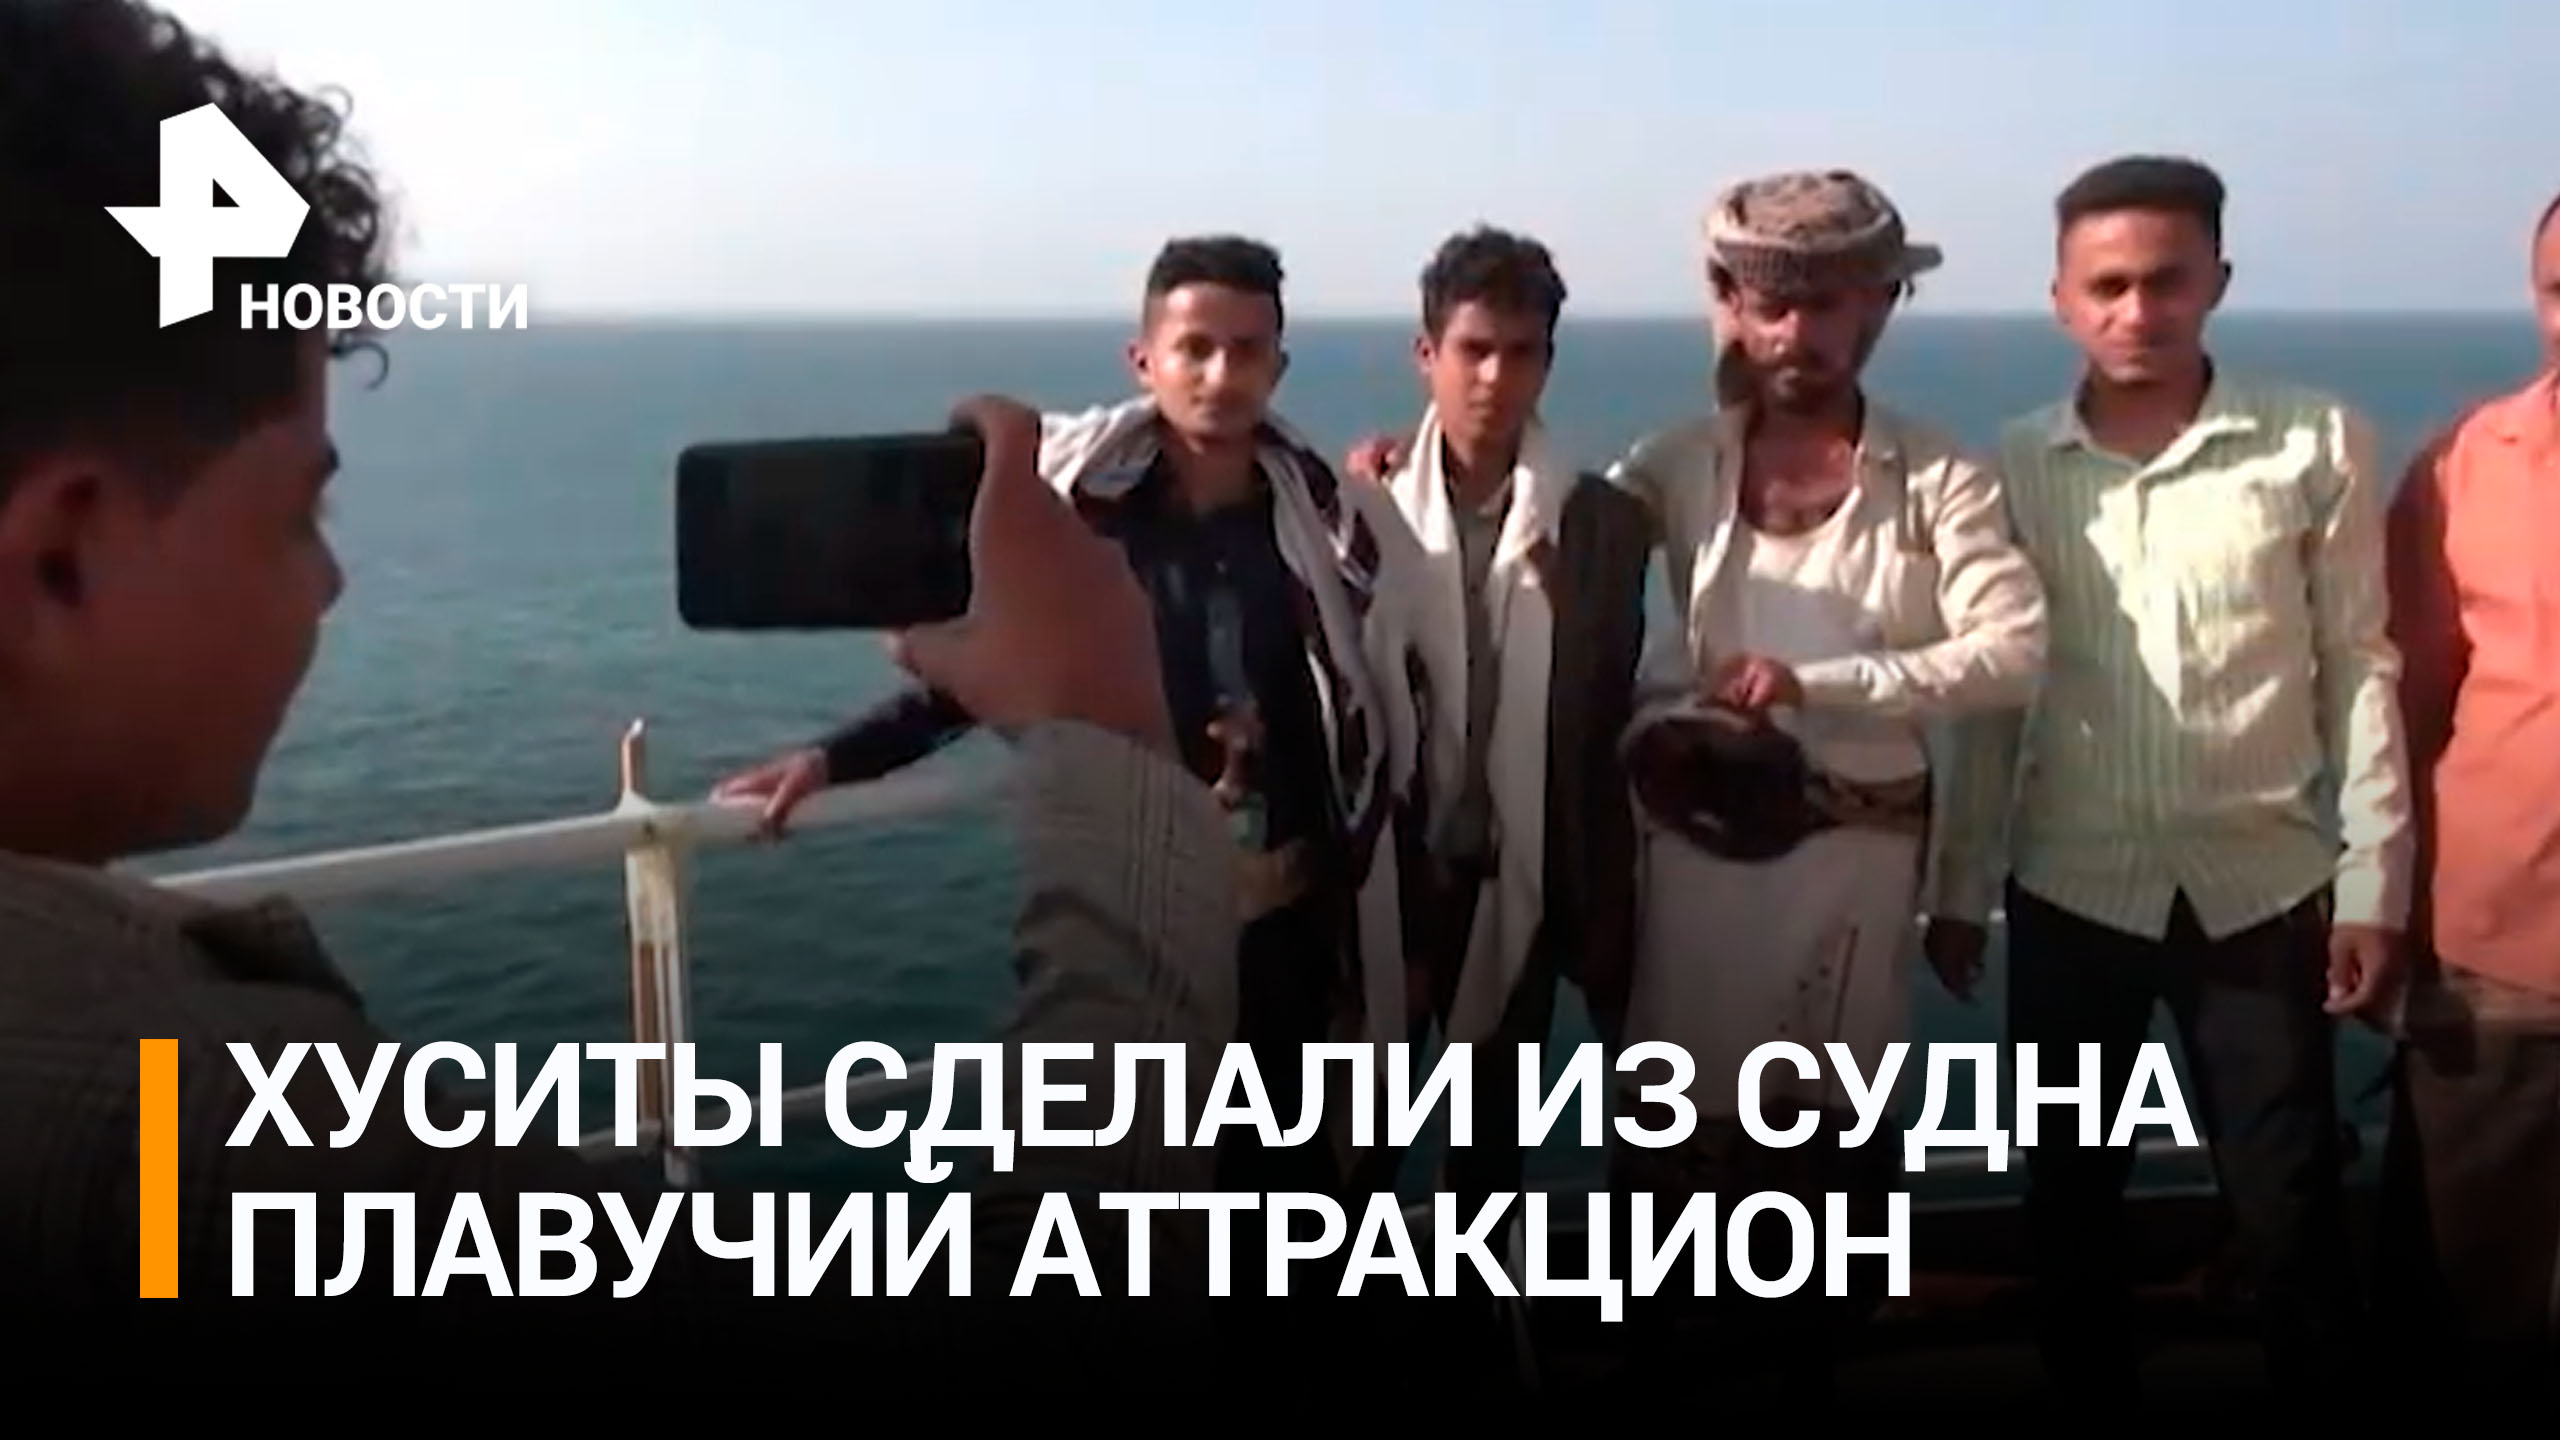 Хуситы превратили захваченное в Красном море судно в аттракцион для туристов / РЕН Новости